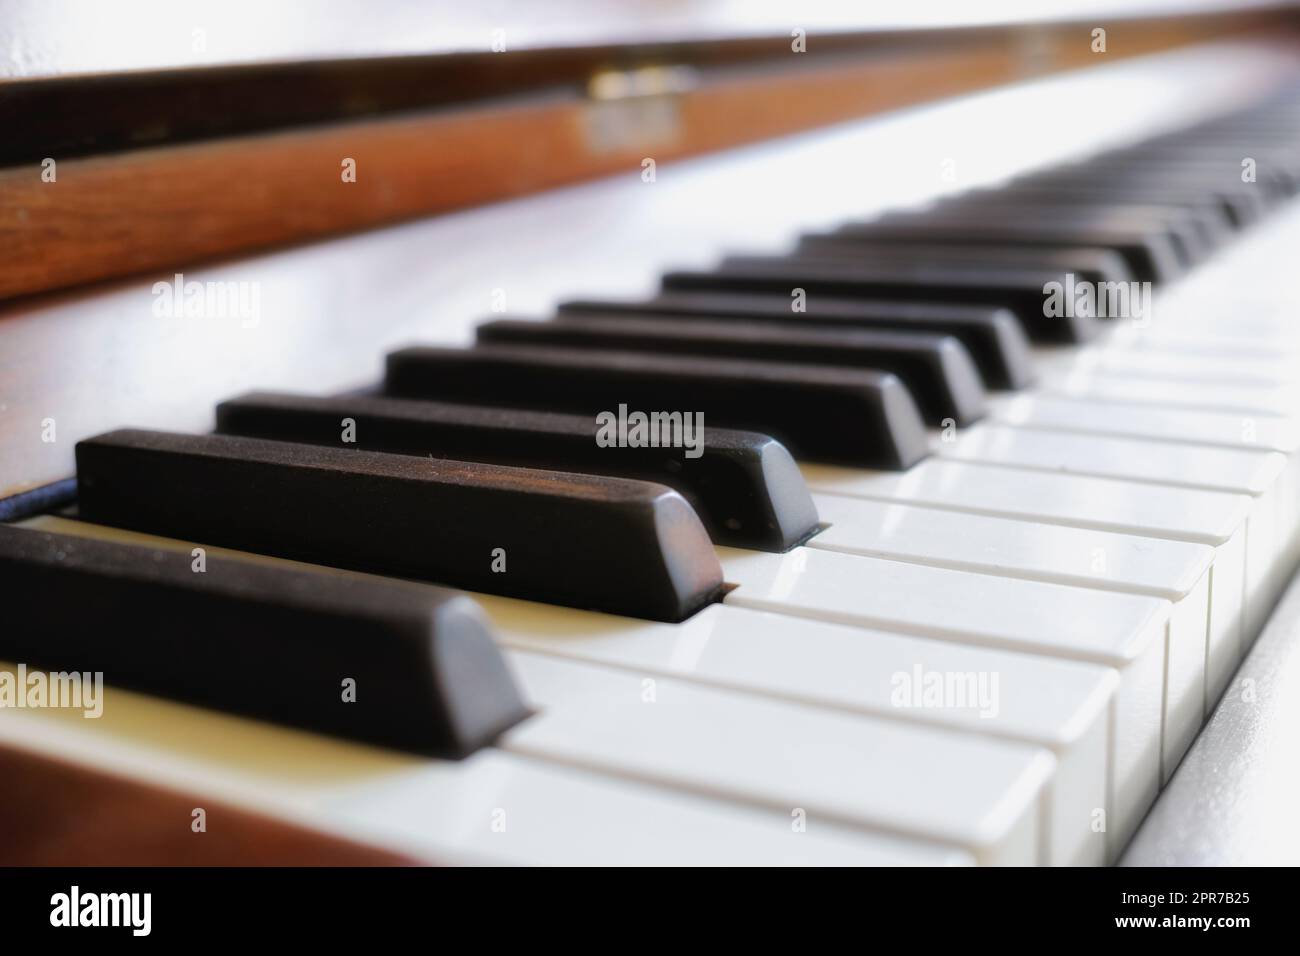 Gros plan des clés classiques de piano en bois exposées dans une galerie d'art musical. Un clavier vintage sur utilisé pour composer de la musique classique ou des chansons. Détail d'un instrument ancien et ancien Banque D'Images